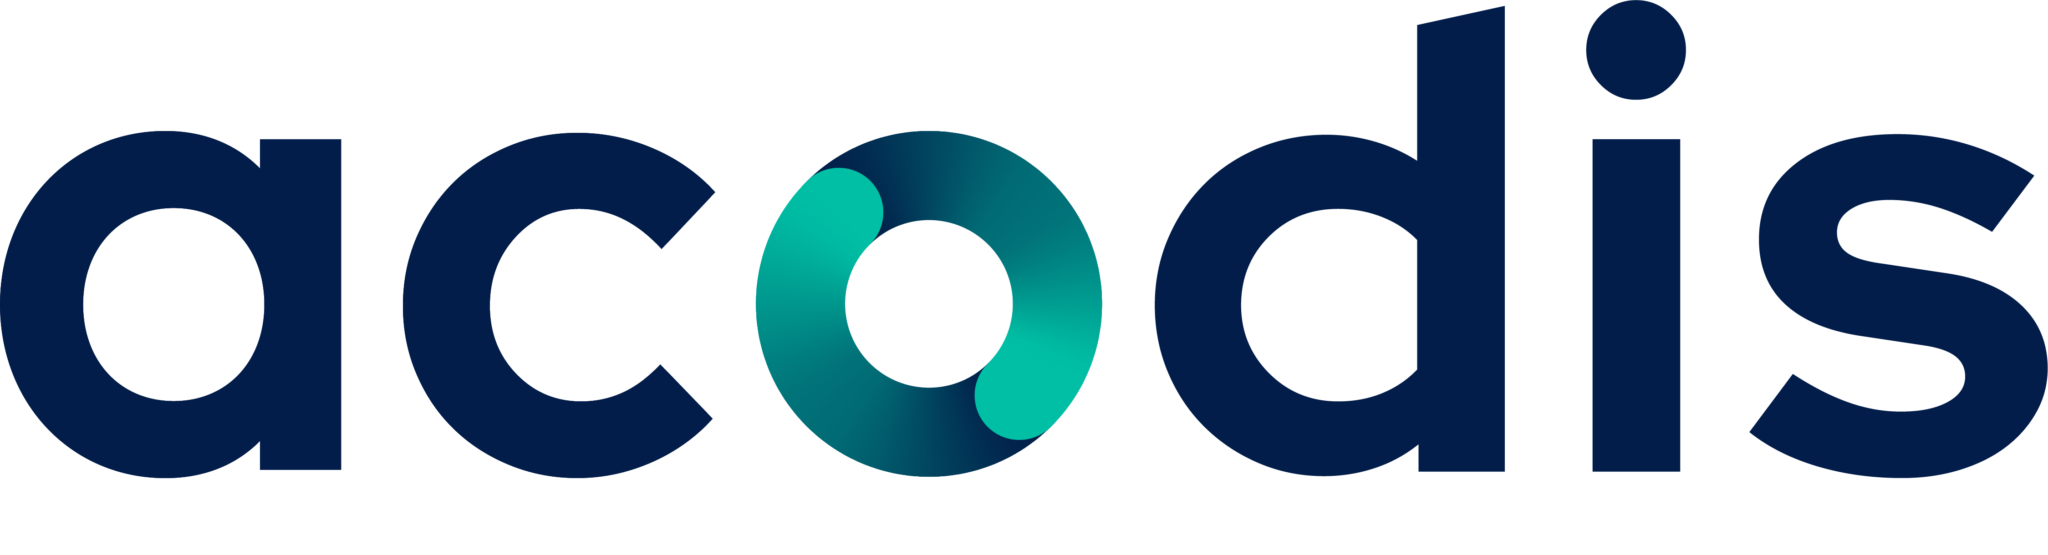 Acodis-Logo-RGB